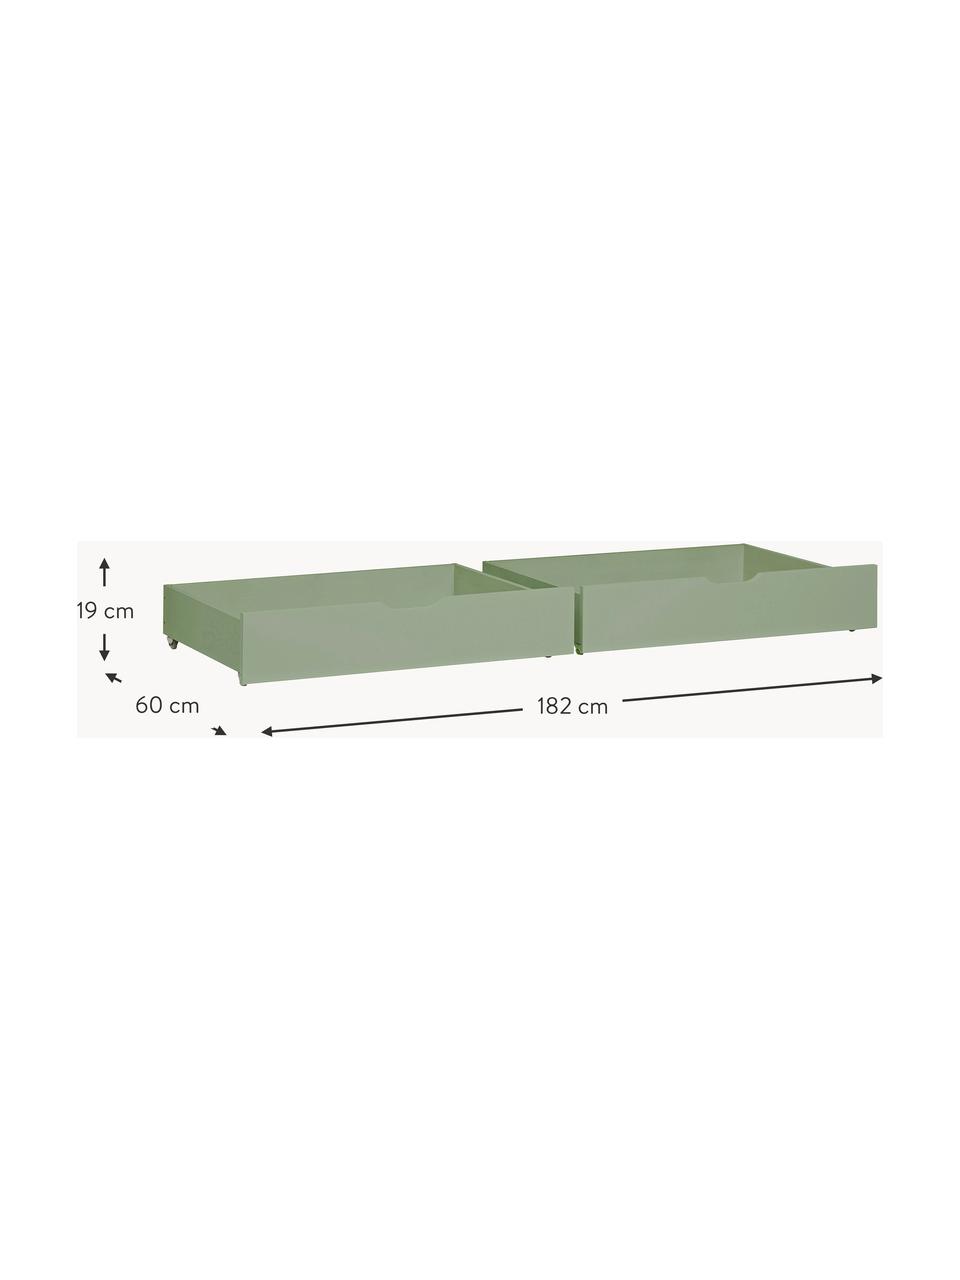 Zásuvky pod postel Eco Comfort, 2 ks, Masivní borovicové dřevo, certifikace FSC, překližka, Dřevo, lakované šalvějově zelenou, Š 182 cm, H 60 cm